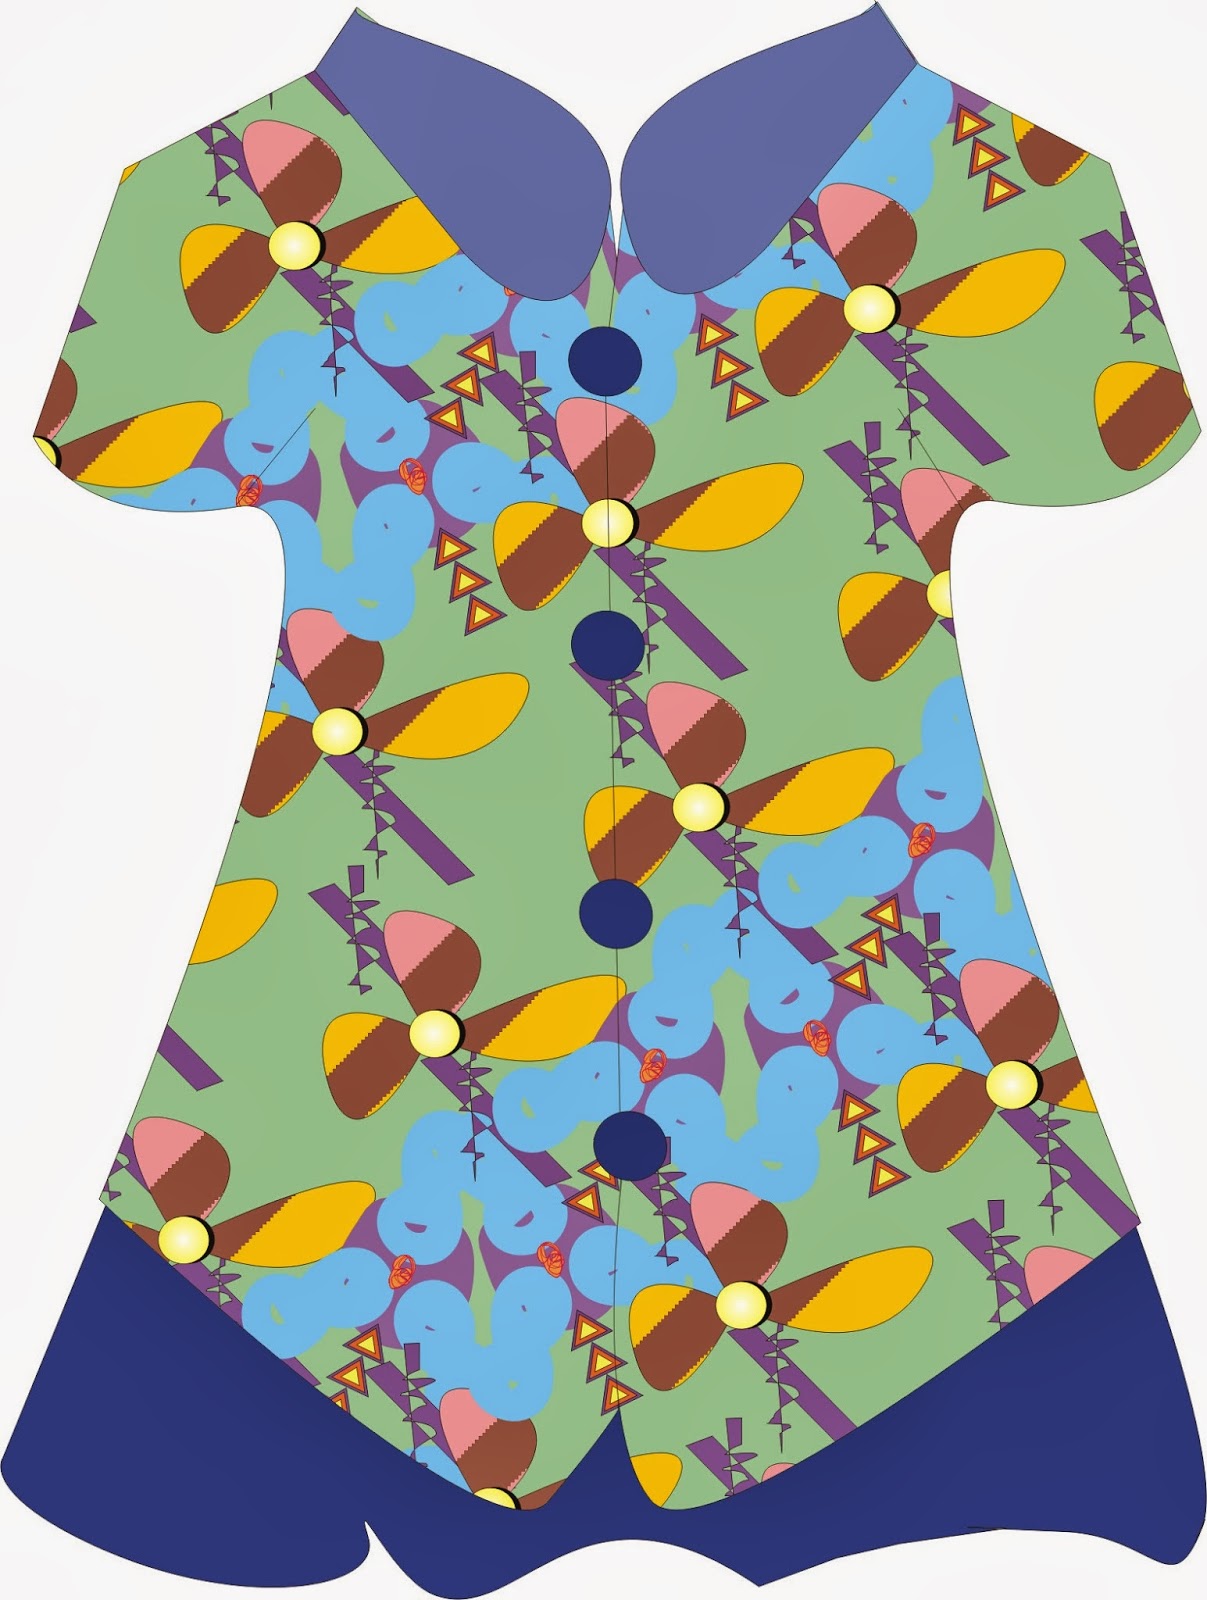 Desain Baju Corel Draw / Membuat Desain Kaos Di Coreldraw Kelas Desain